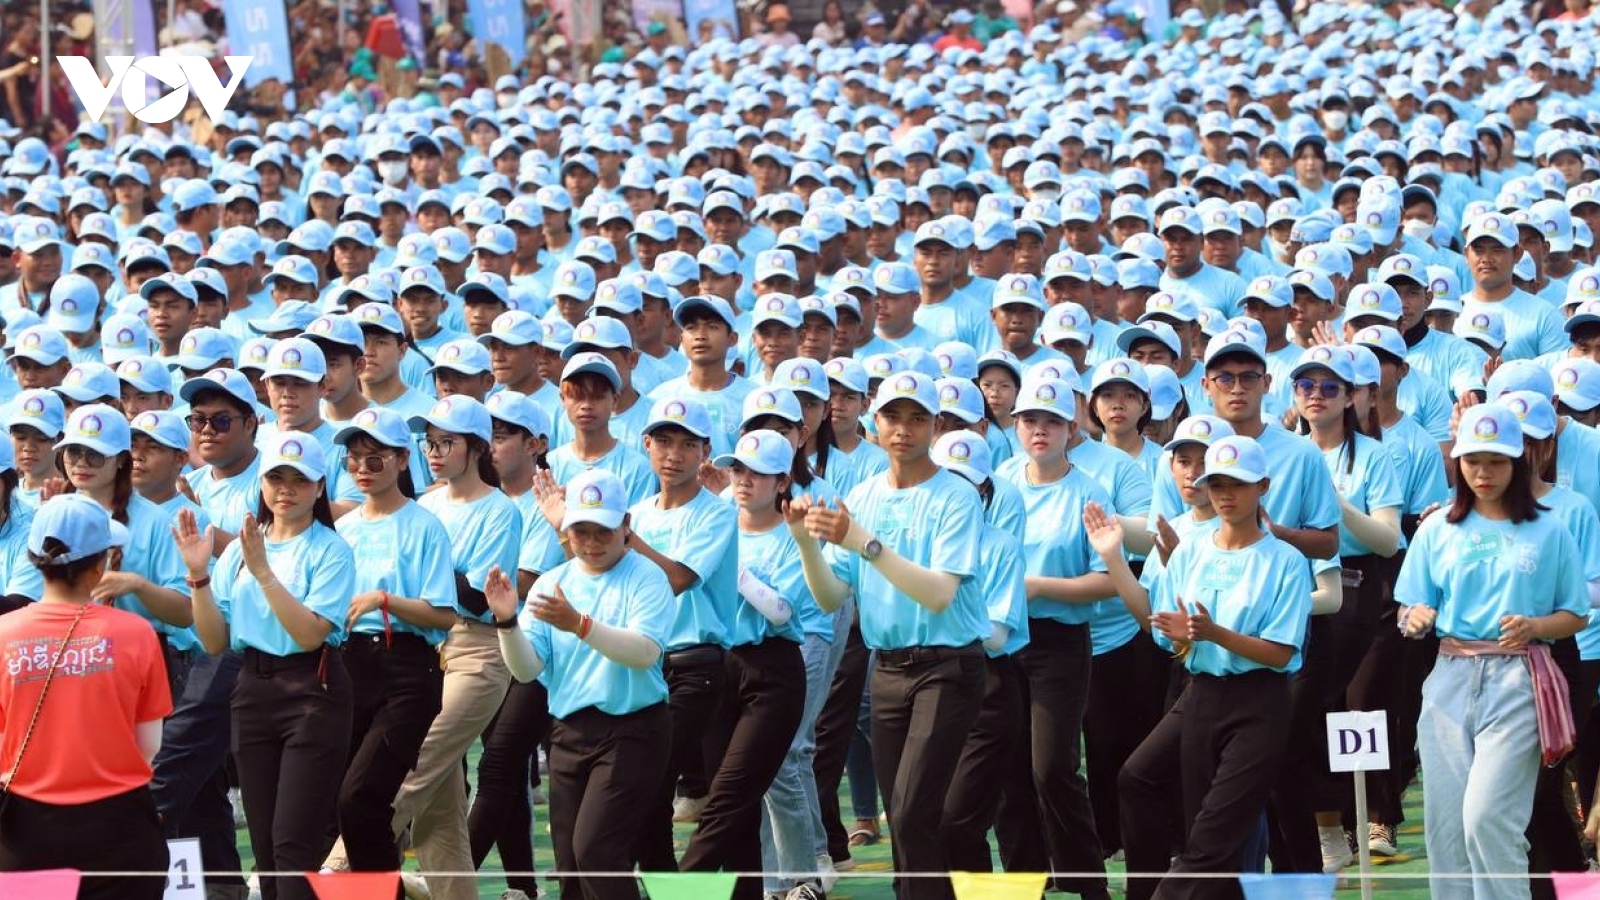 Campuchia phá kỷ lục Guinness về số lượng người nhảy Madison